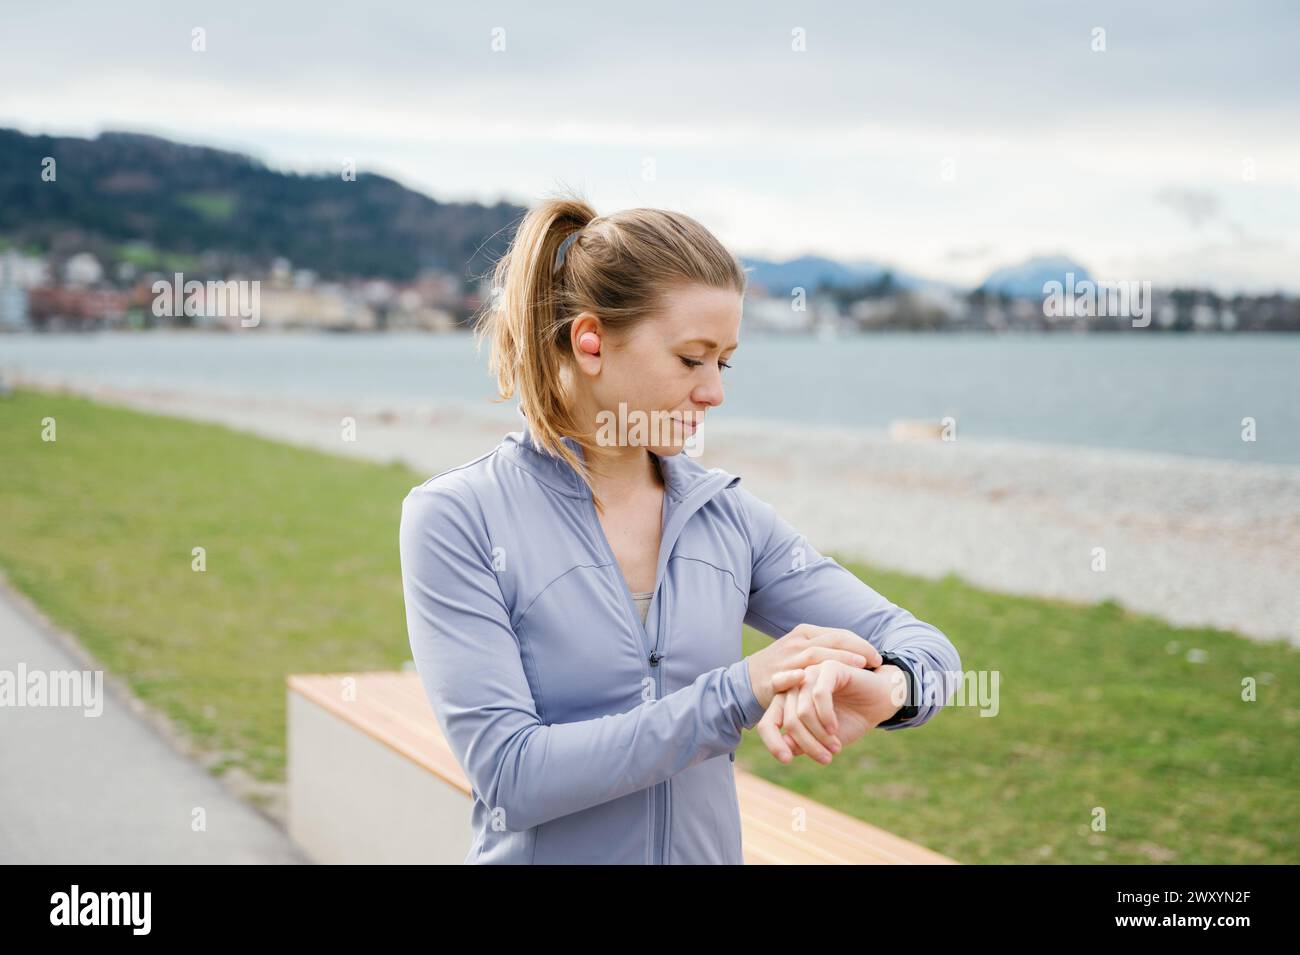 Une femme concentrée en vêtements sportifs utilise sa smartwatch pour surveiller son entraînement au bord du lac, avec des paysages naturels autour Banque D'Images